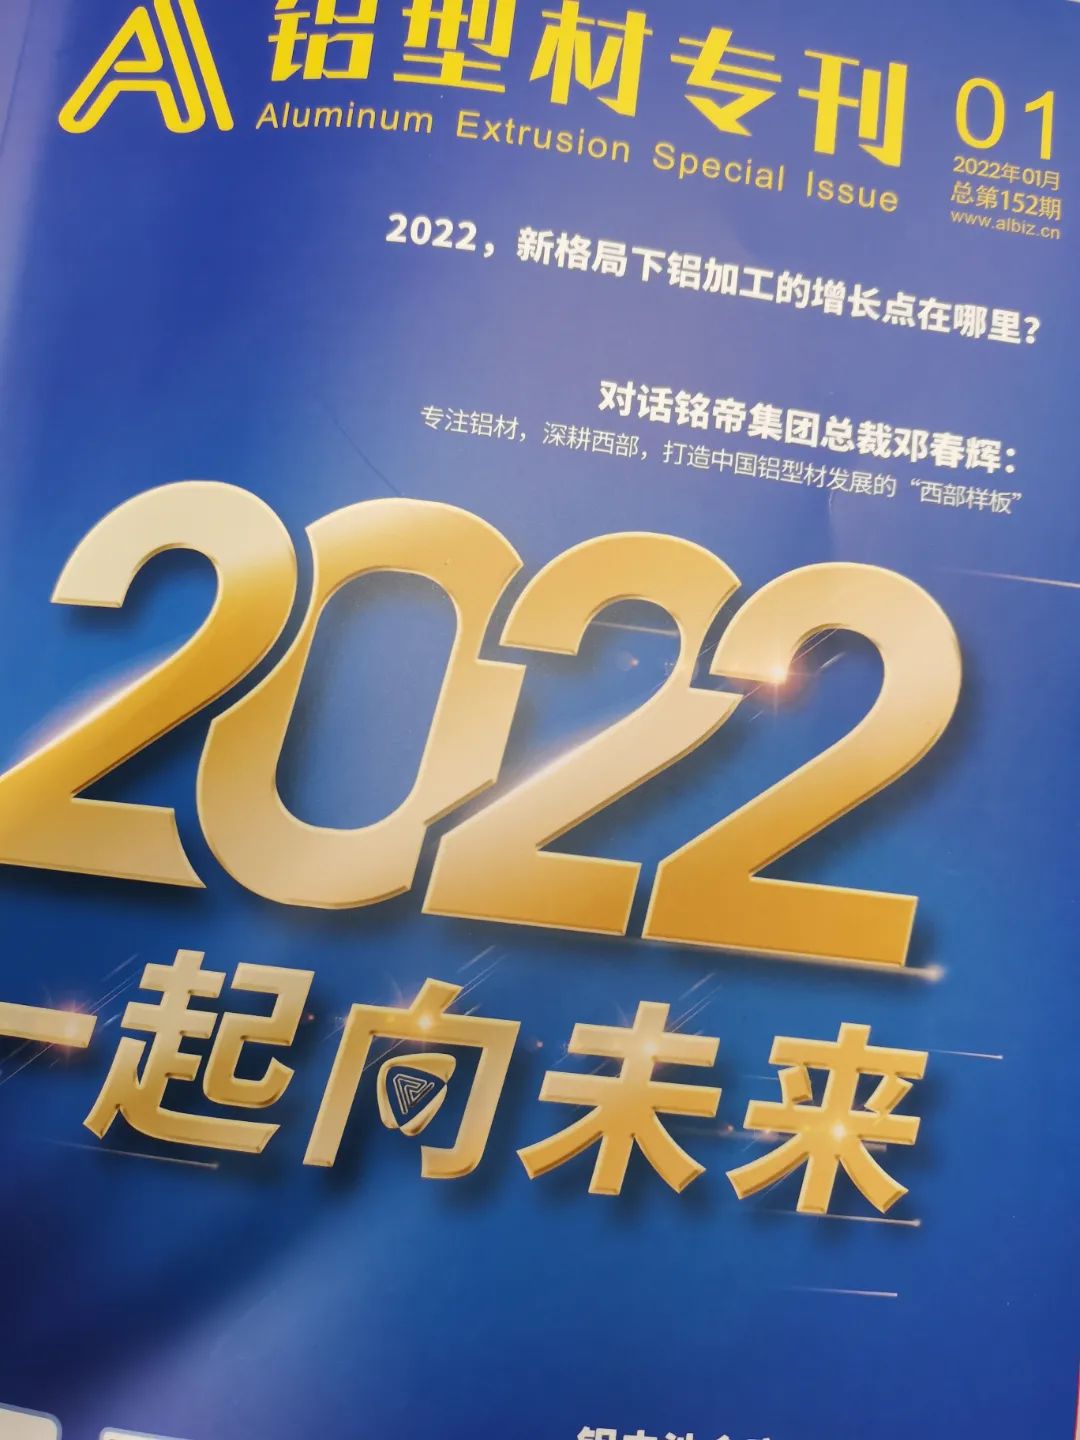 启航2022铝型材专刊与您一起向未来